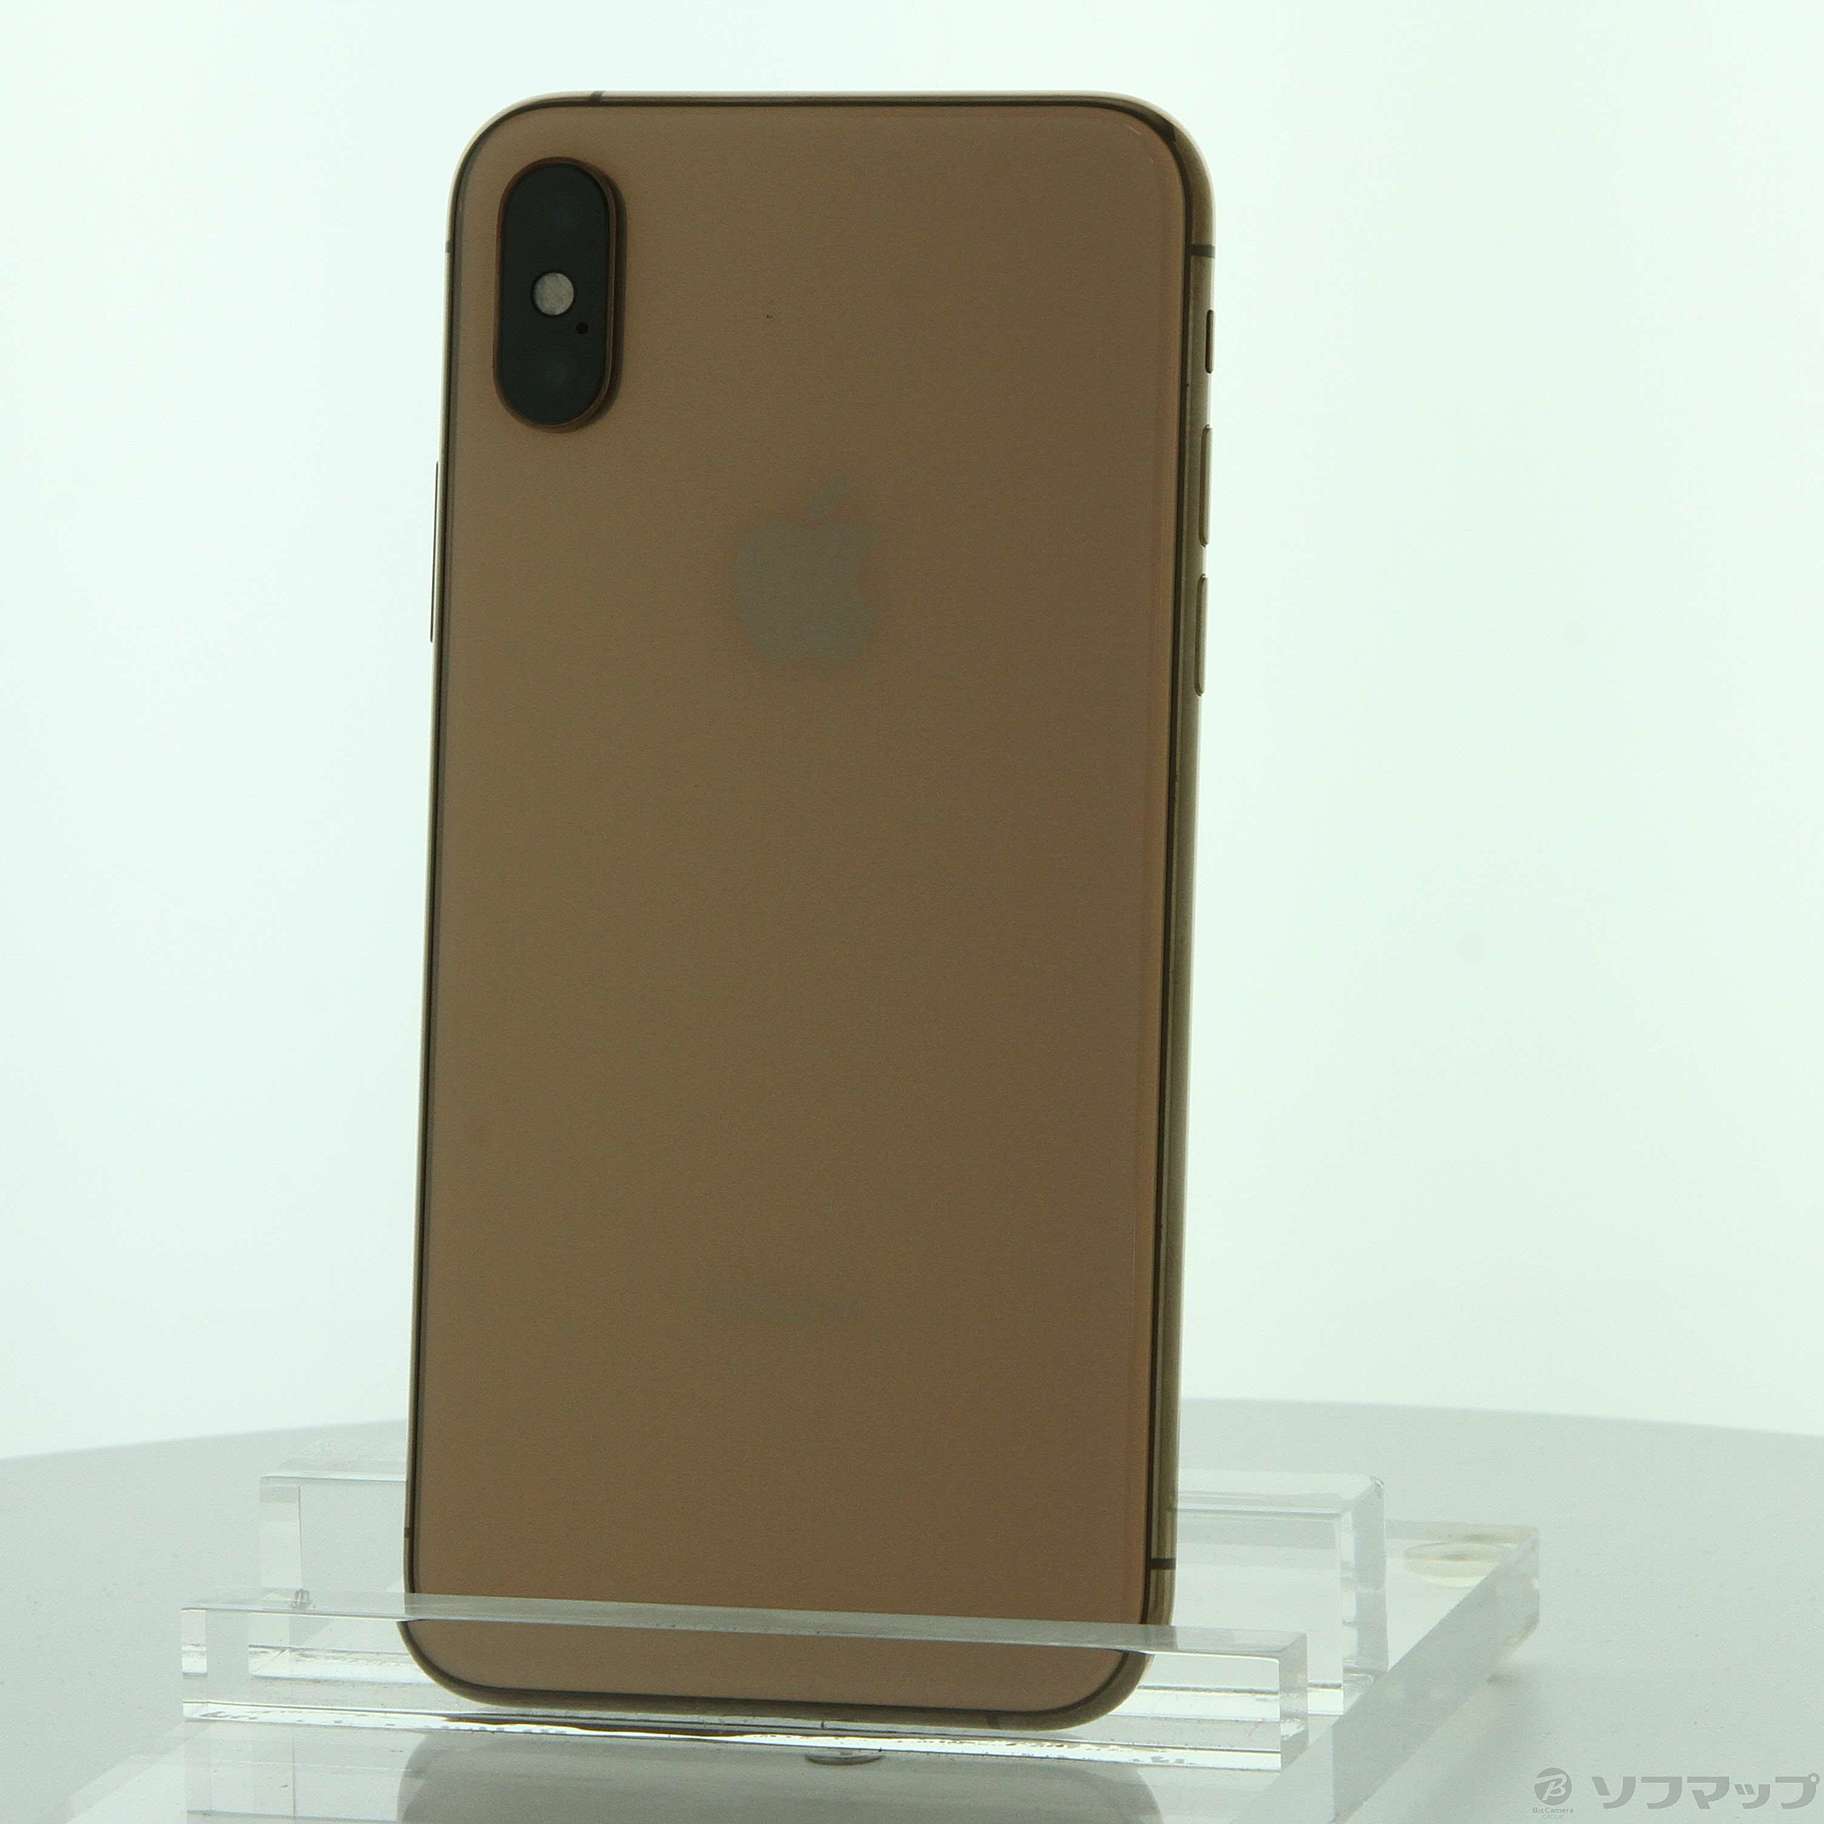 iPhoneXS 本体 ゴールド 256GB - 携帯電話本体